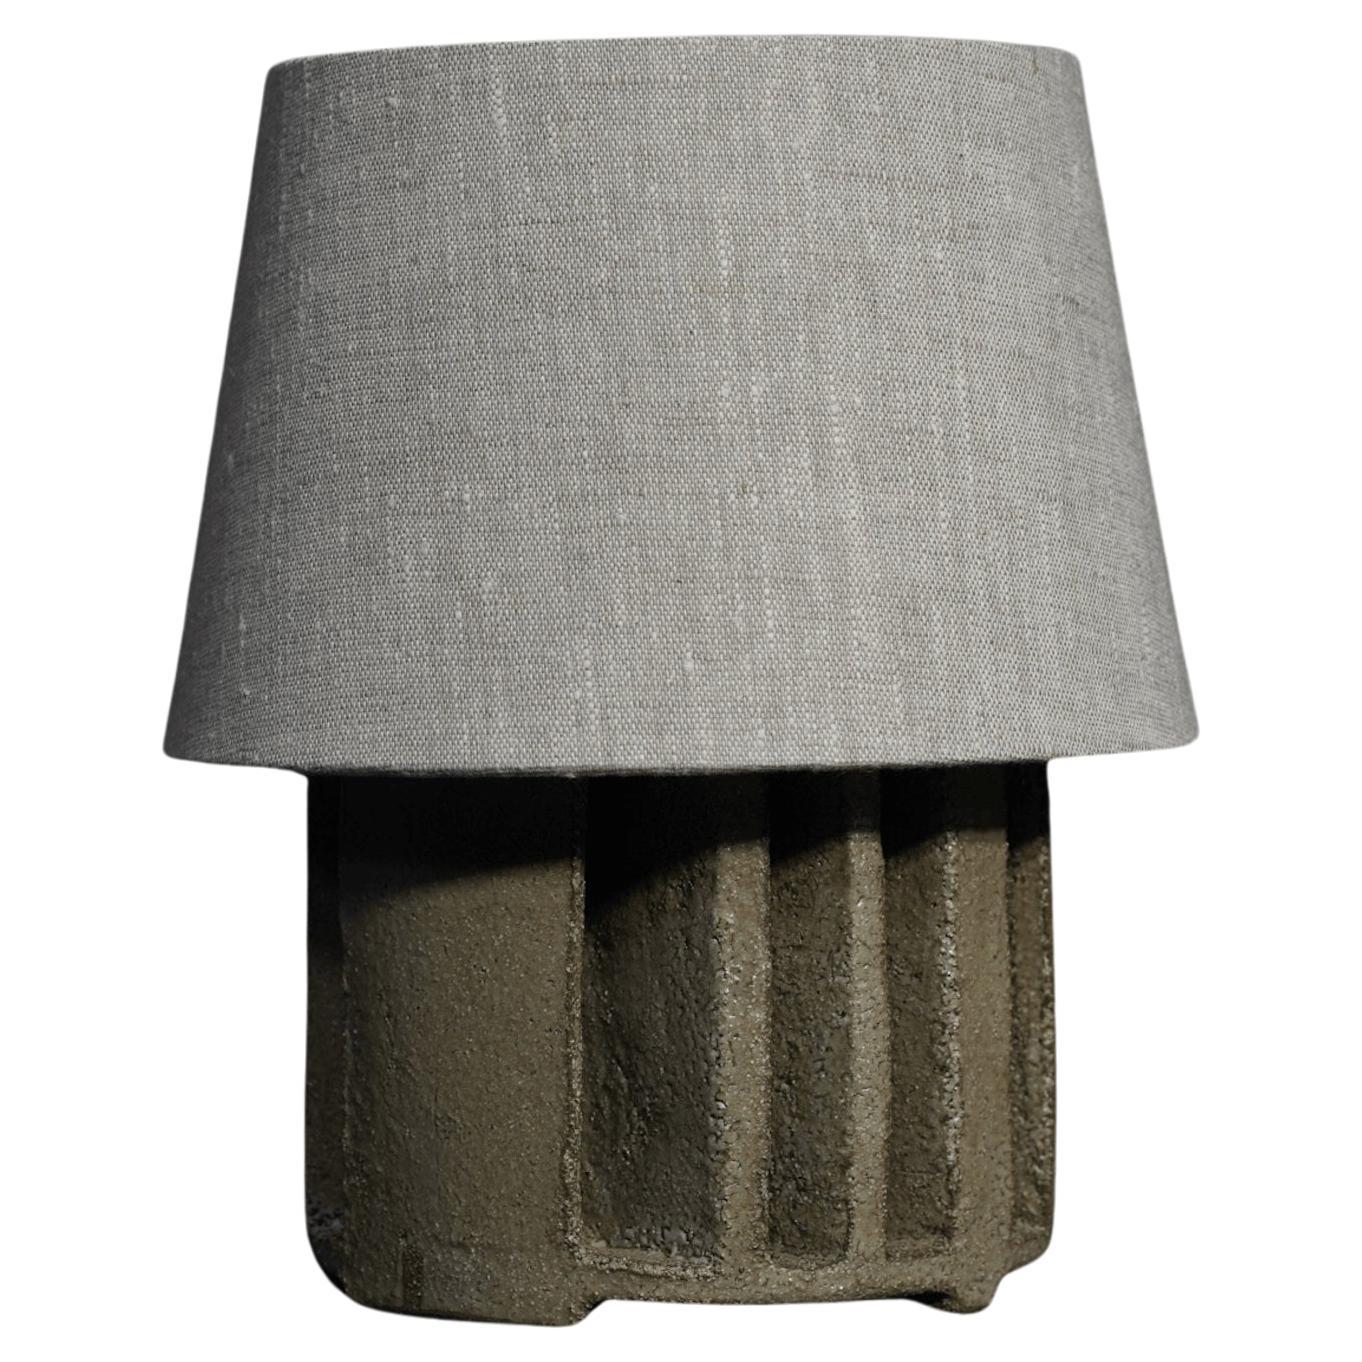 Small Sculptural “I” Ceramic Table Lamp, Lichen